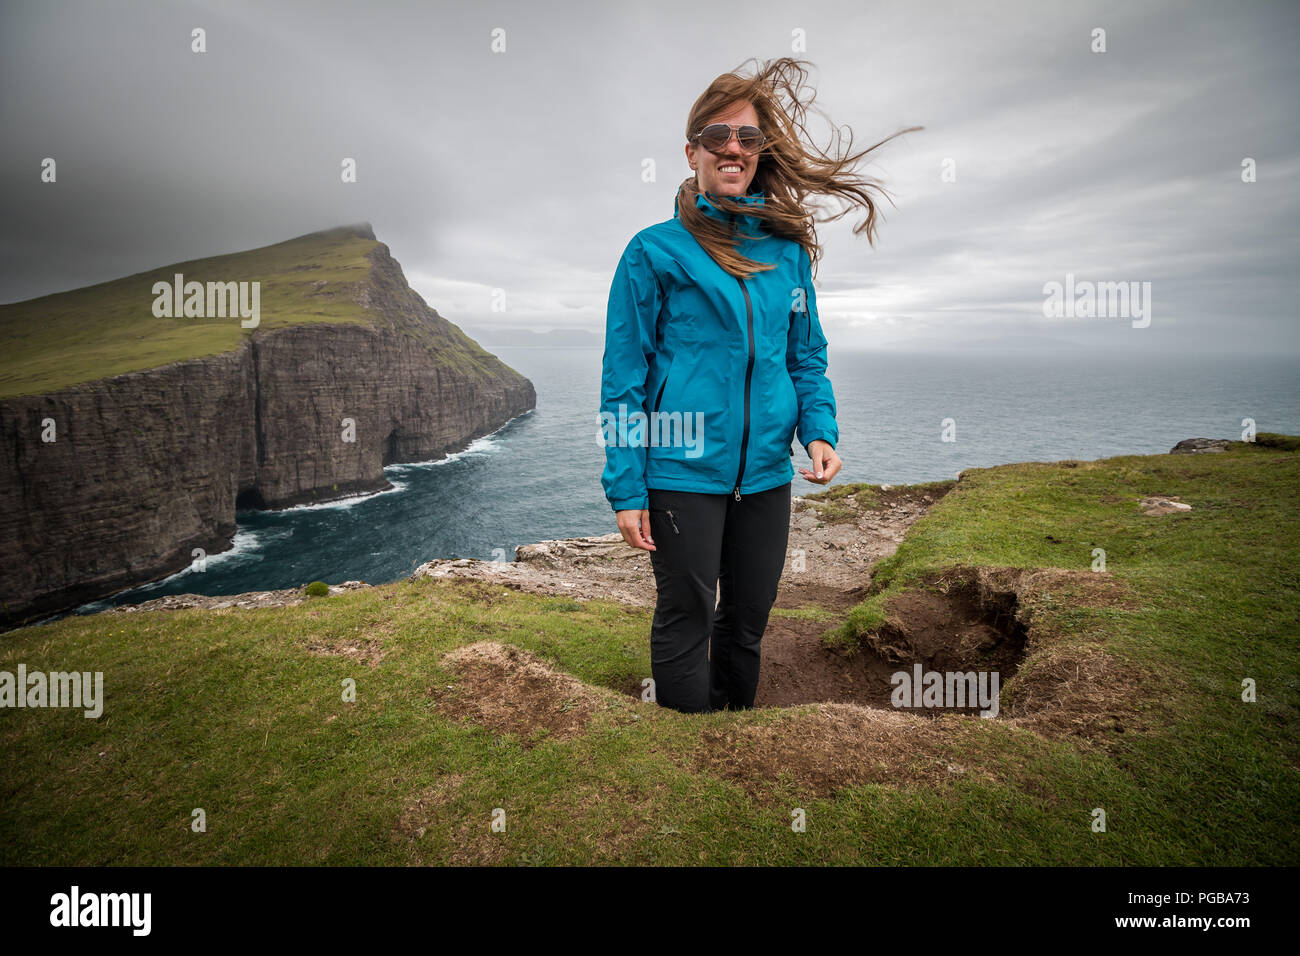 Glückliche junge Frau, die Haare im Wind beugen Reisen lifestyle Konzept, Traelanípa Klippen, Insel Vágar, Färöer Inseln Stockfoto